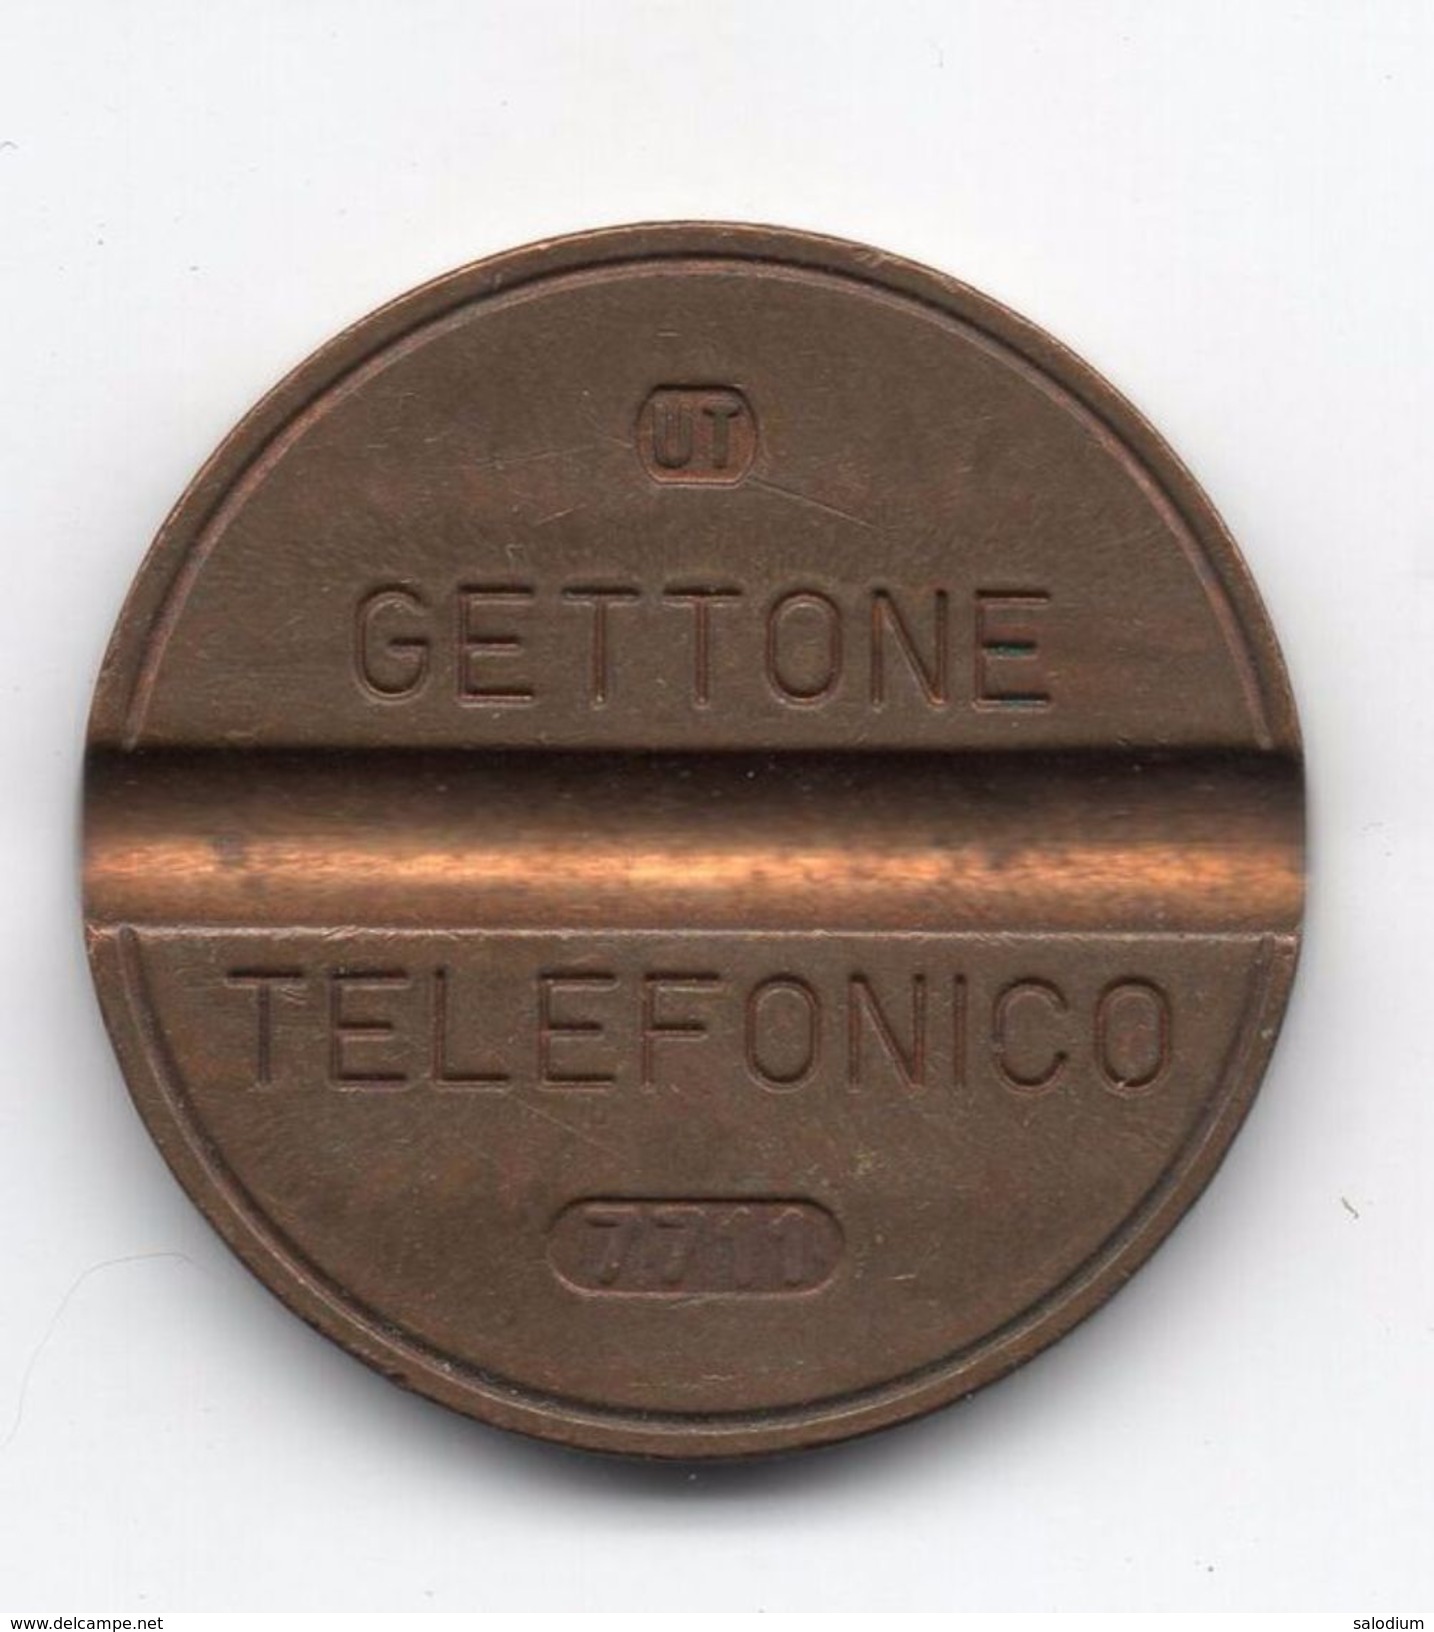 Gettone Telefonico 7711 Token Telephone - (Id-770) - Professionnels/De Société